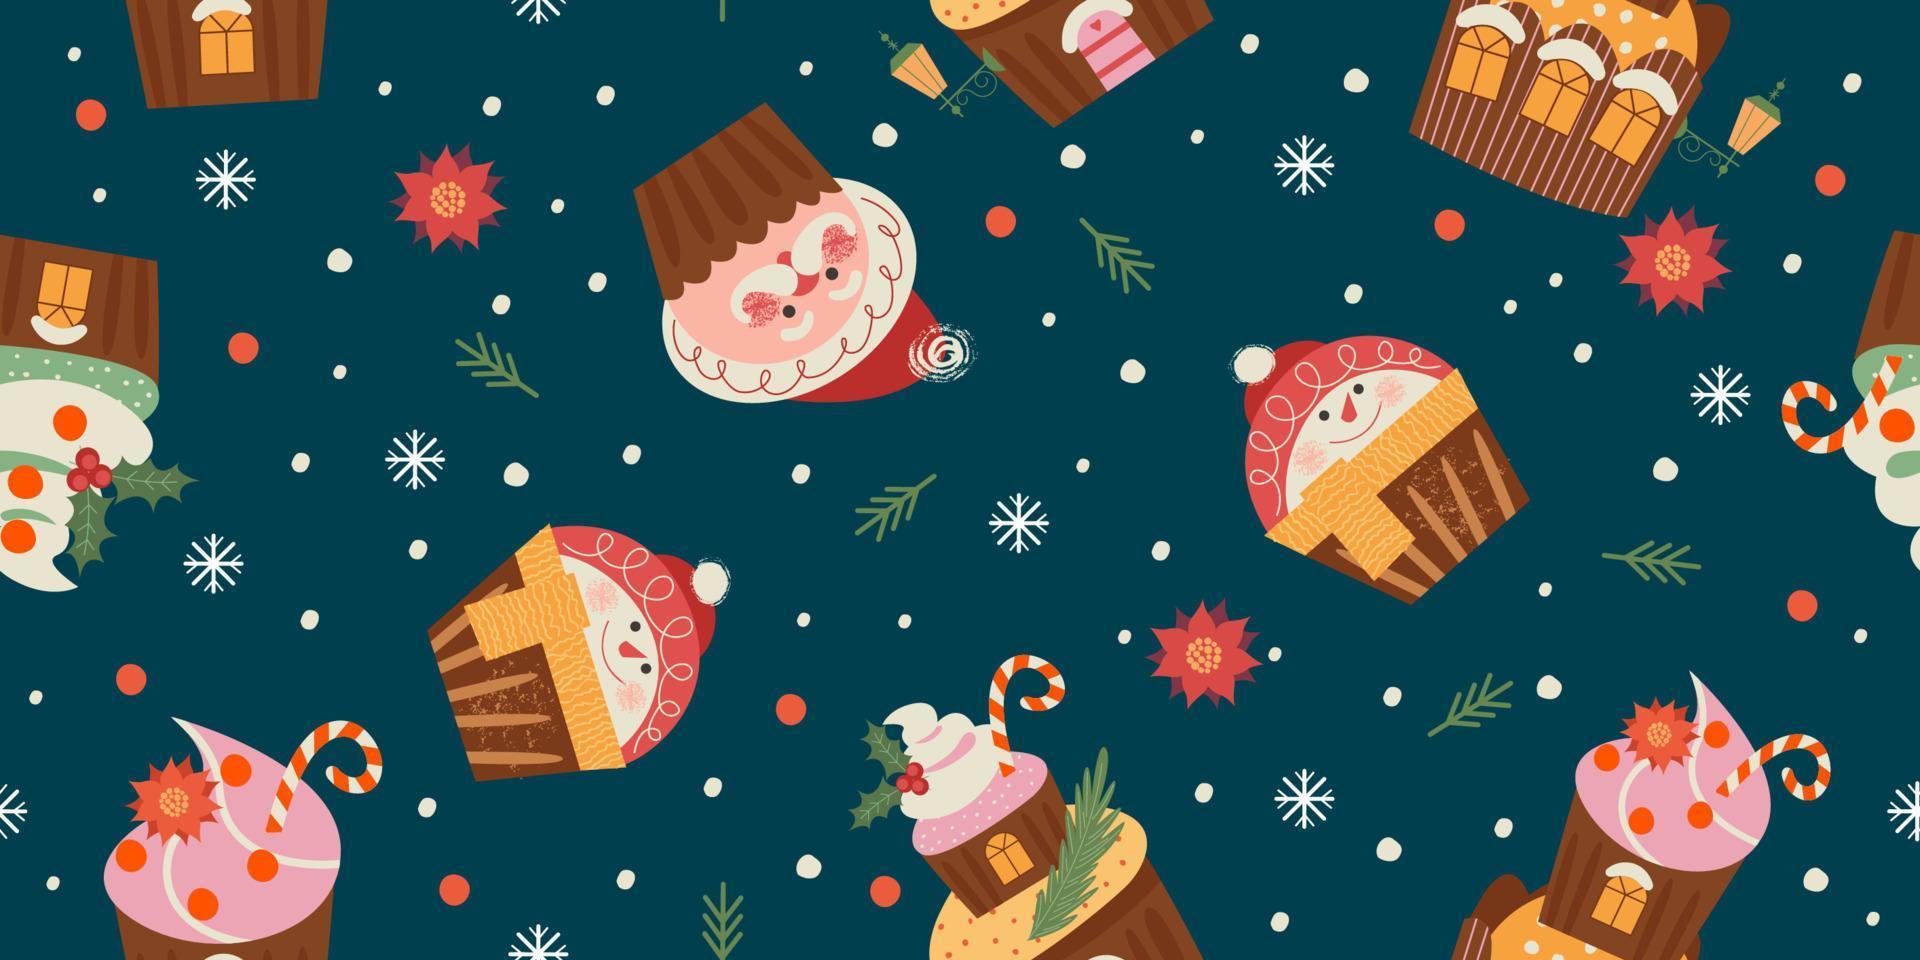 vrolijk kerstfeest en een gelukkig nieuwjaar. vector naadloze patroon met schattige snoepjes.